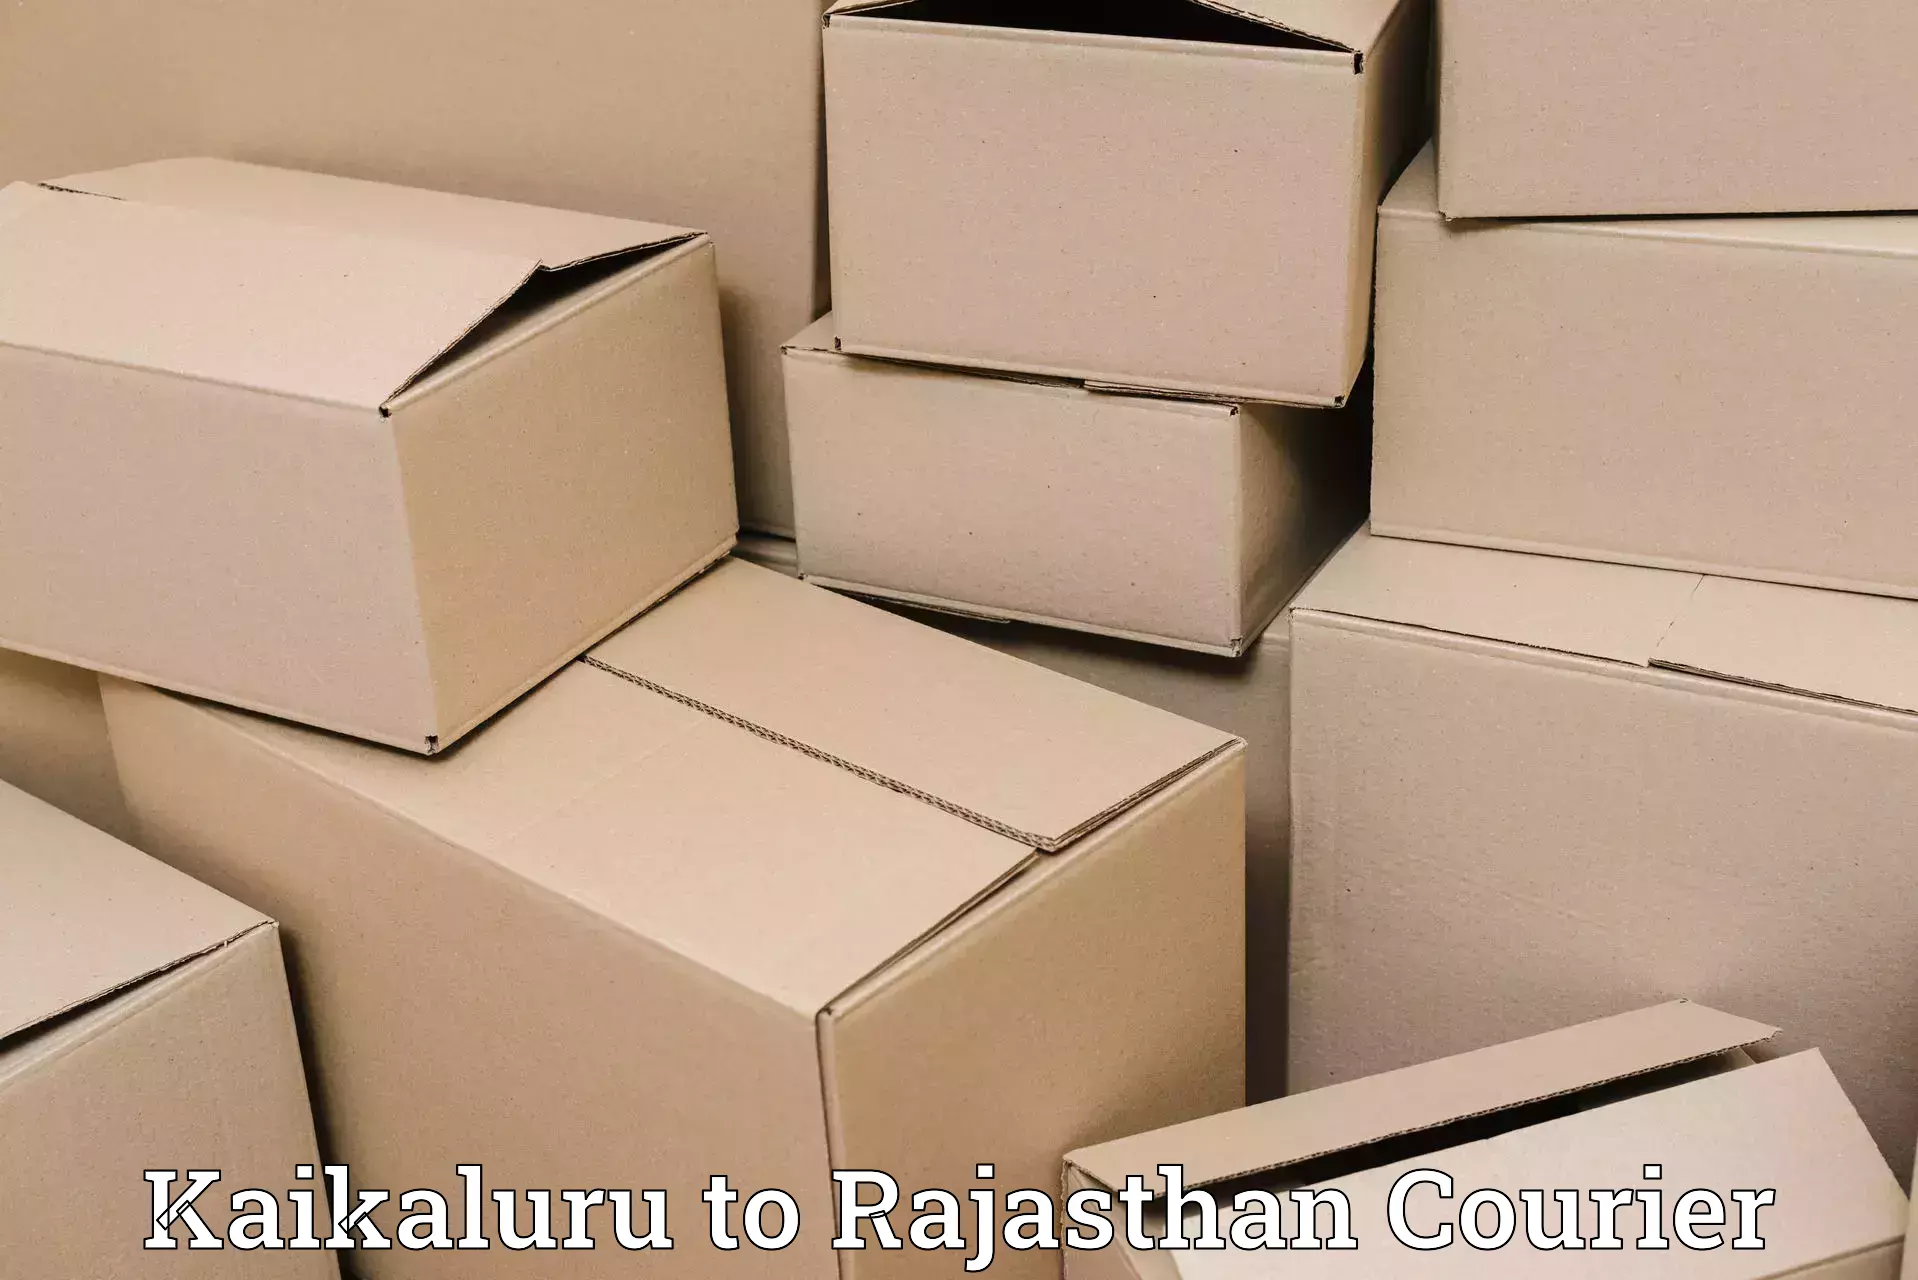 Affordable parcel service Kaikaluru to Bharatpur